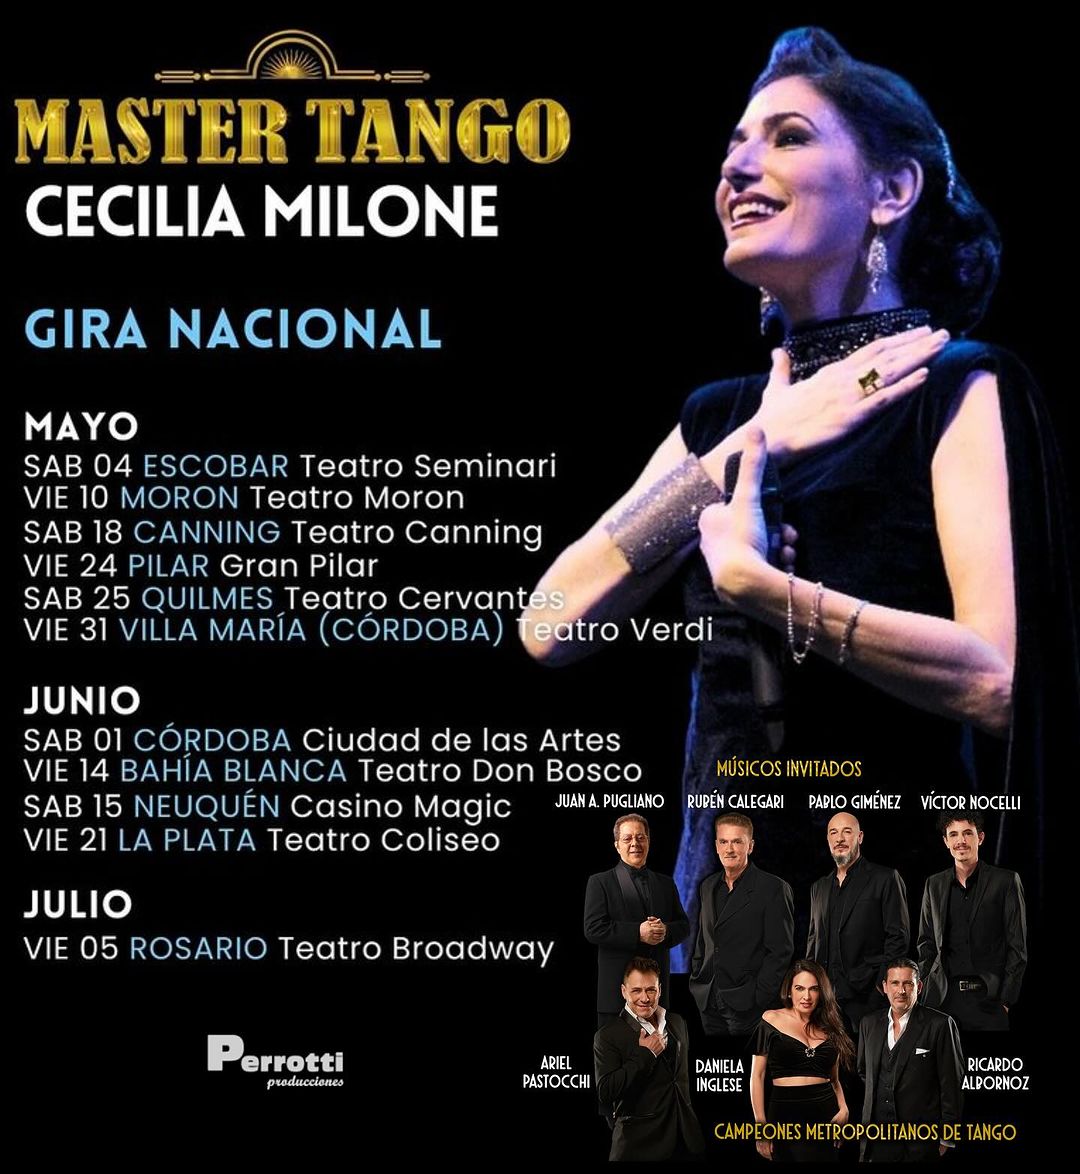 Cecilia Milone, en exclusiva con Contá Conmigo: los detalles de su show "Master Tango" • Canal C